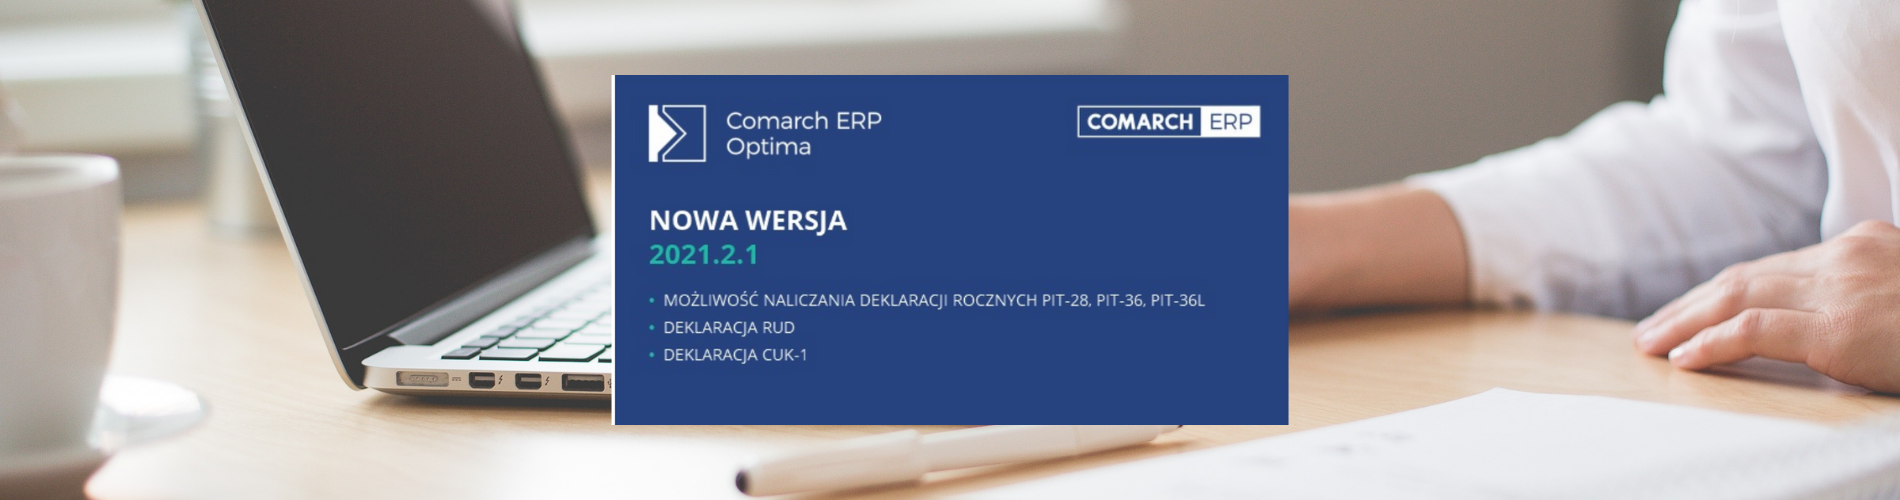 Comarch ERP Optima 2.1